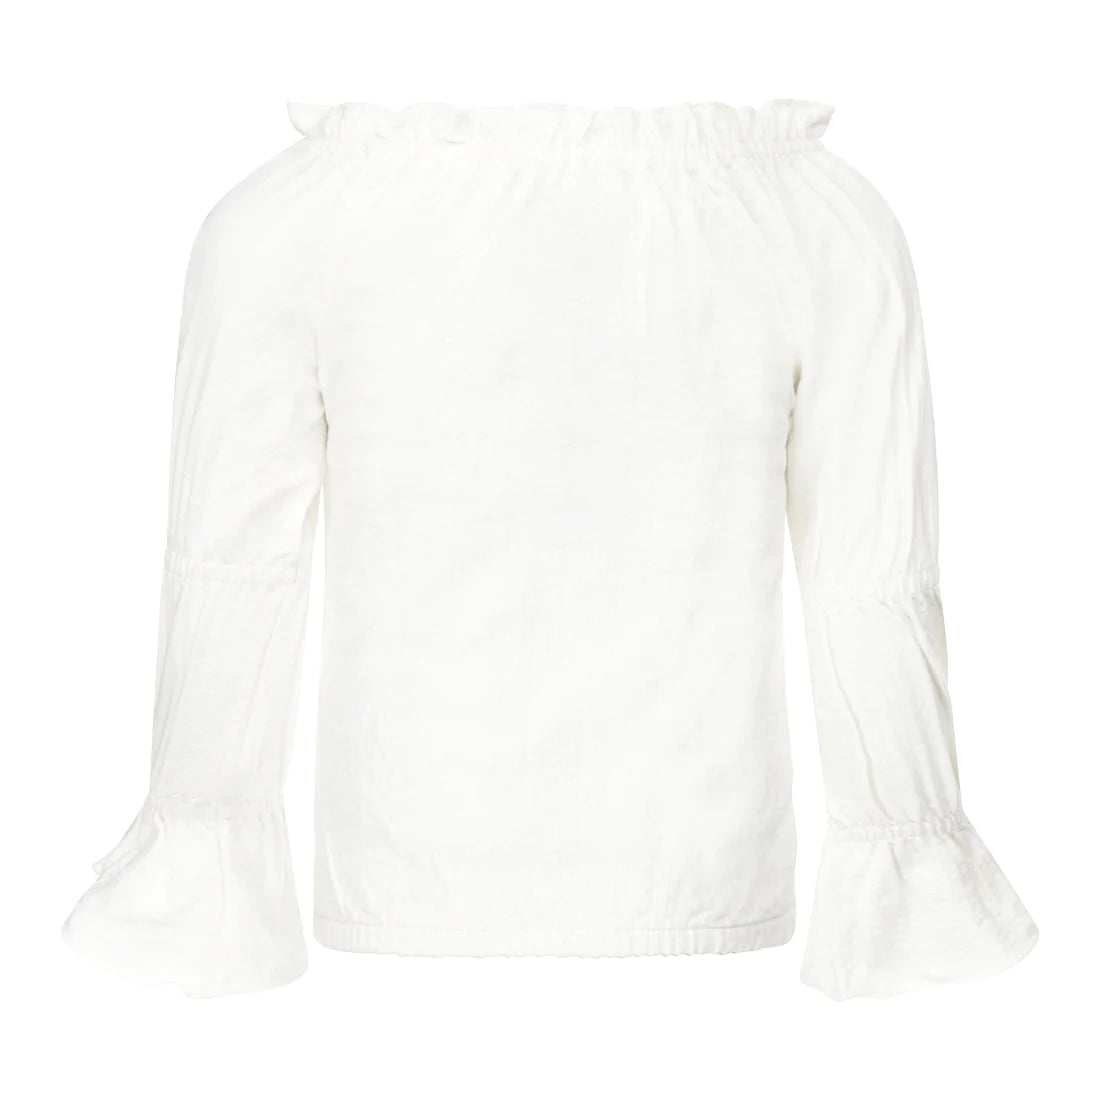 Meisjes T-shirt ls van Koko Noko in de kleur  Off white in maat 128.